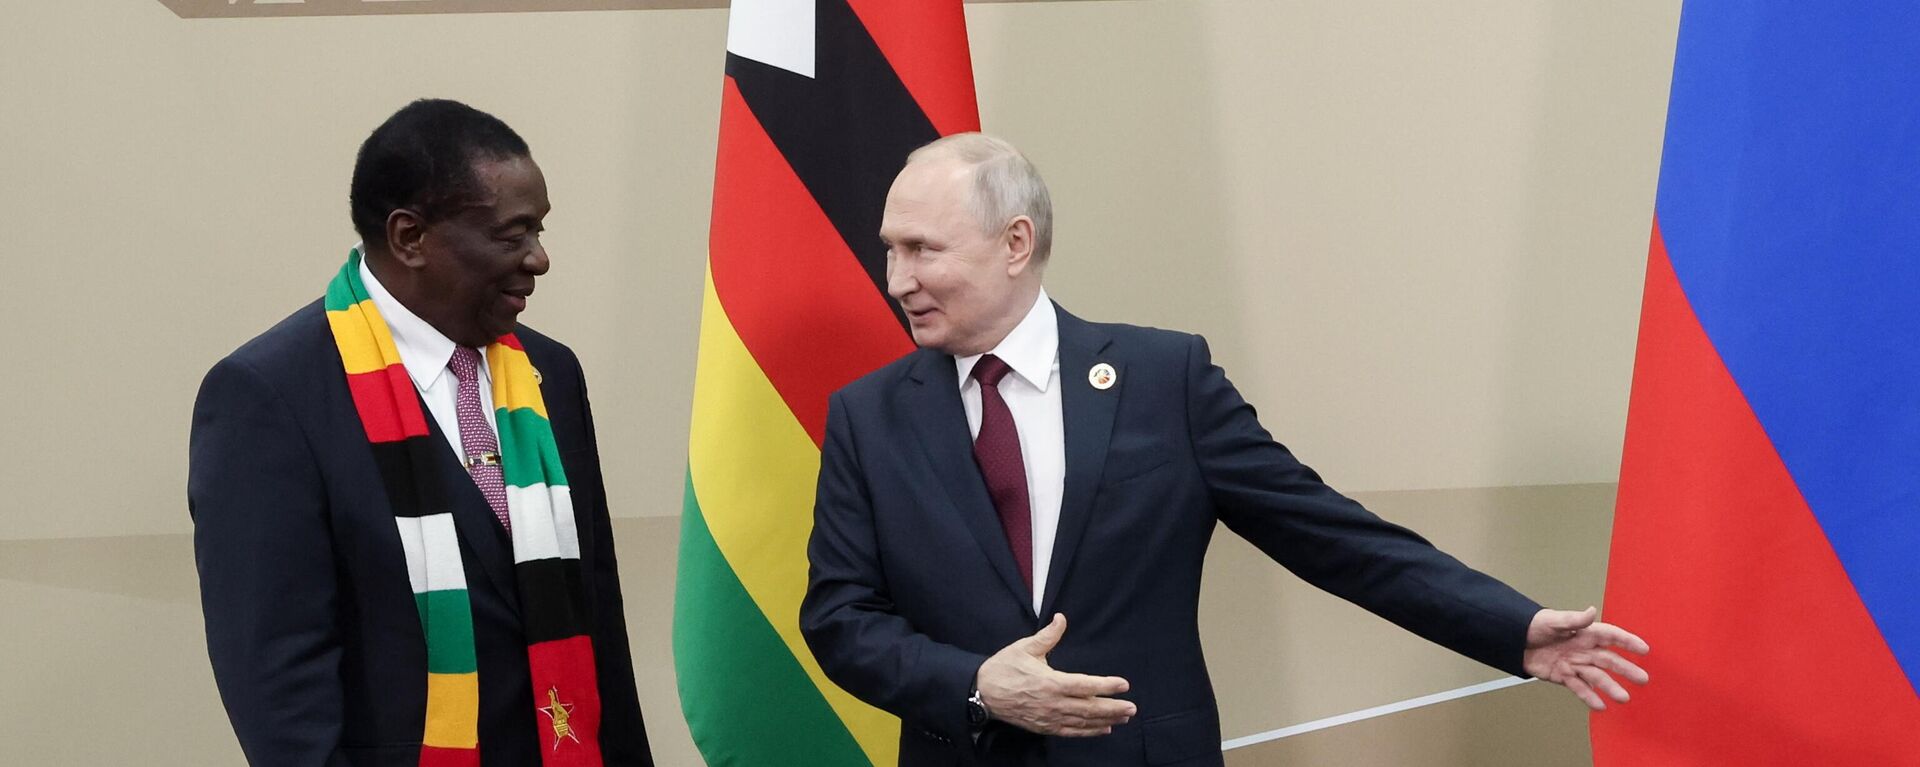 Tổng thống Nga Vladimir Putin và Tổng thống Cộng hòa Zimbabwe Emmerson Mnangagwa trong cuộc gặp bên lề Diễn đàn và Hội nghị thượng đỉnh Nga-Châu Phi lần thứ 2 tại St. Petersburg - Sputnik Việt Nam, 1920, 25.09.2023